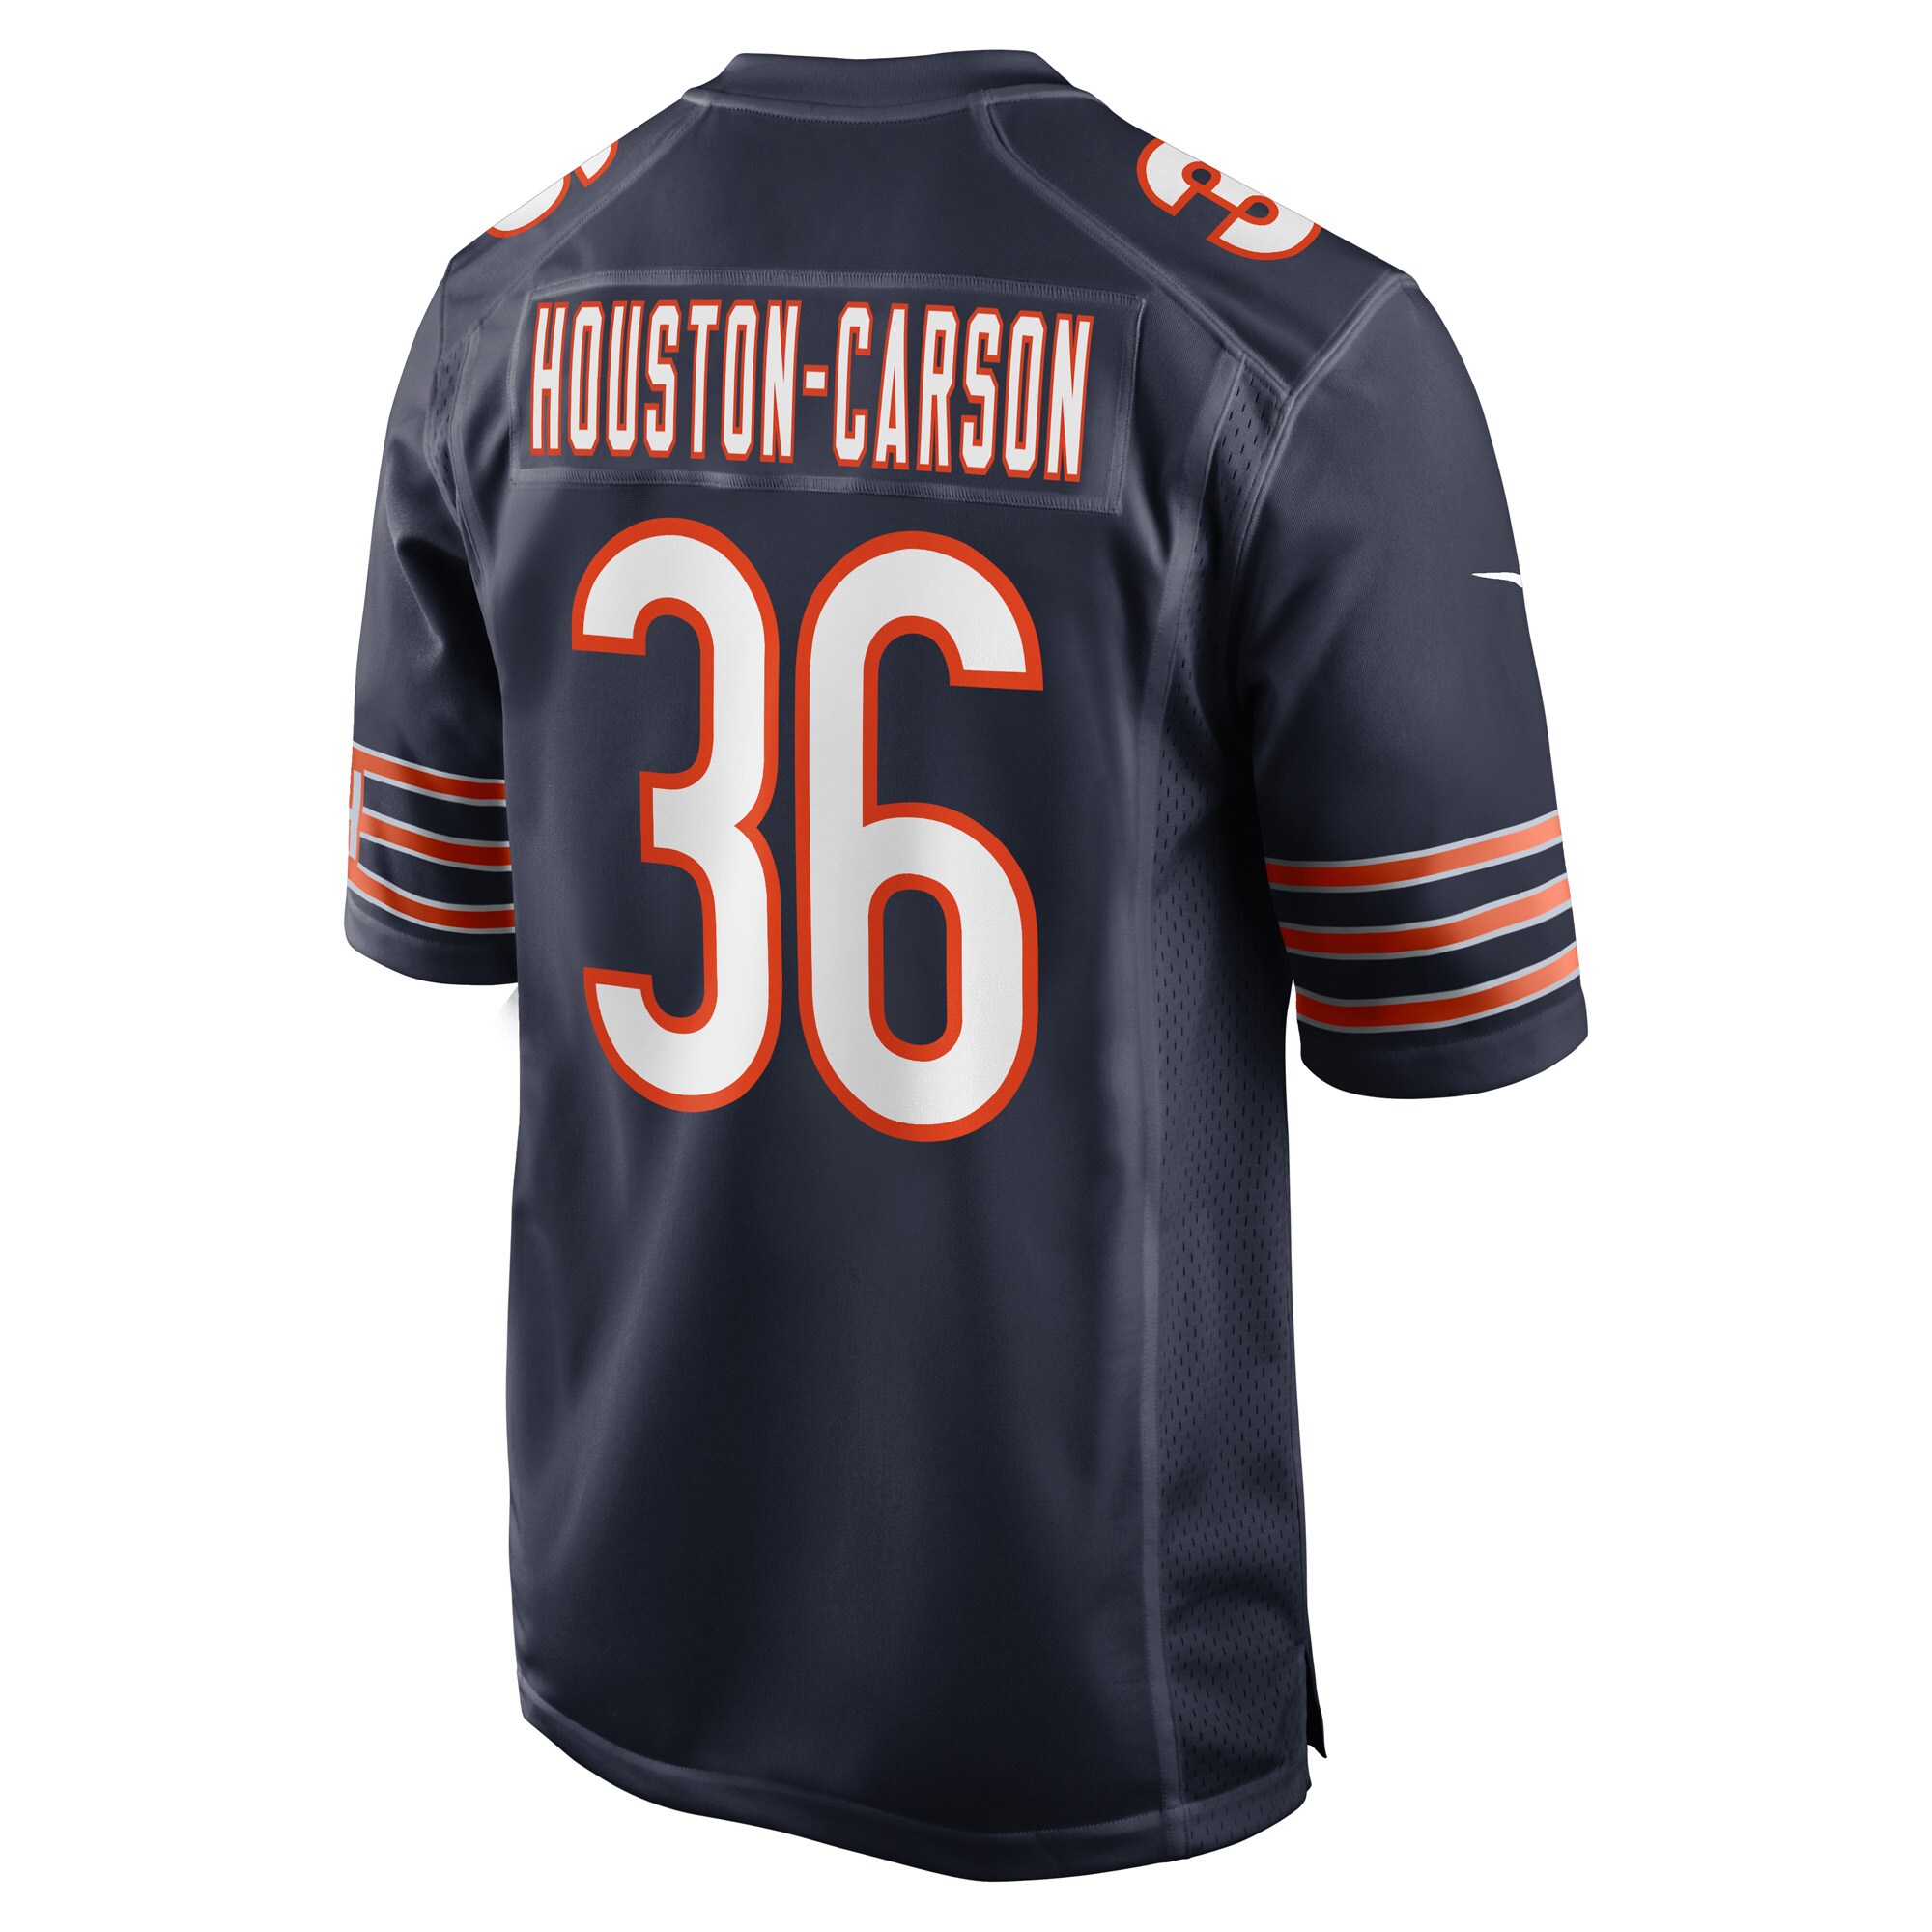 Men's Chicago Bears Jerseys Navy DeAndre Houston-Carson Game Player Style